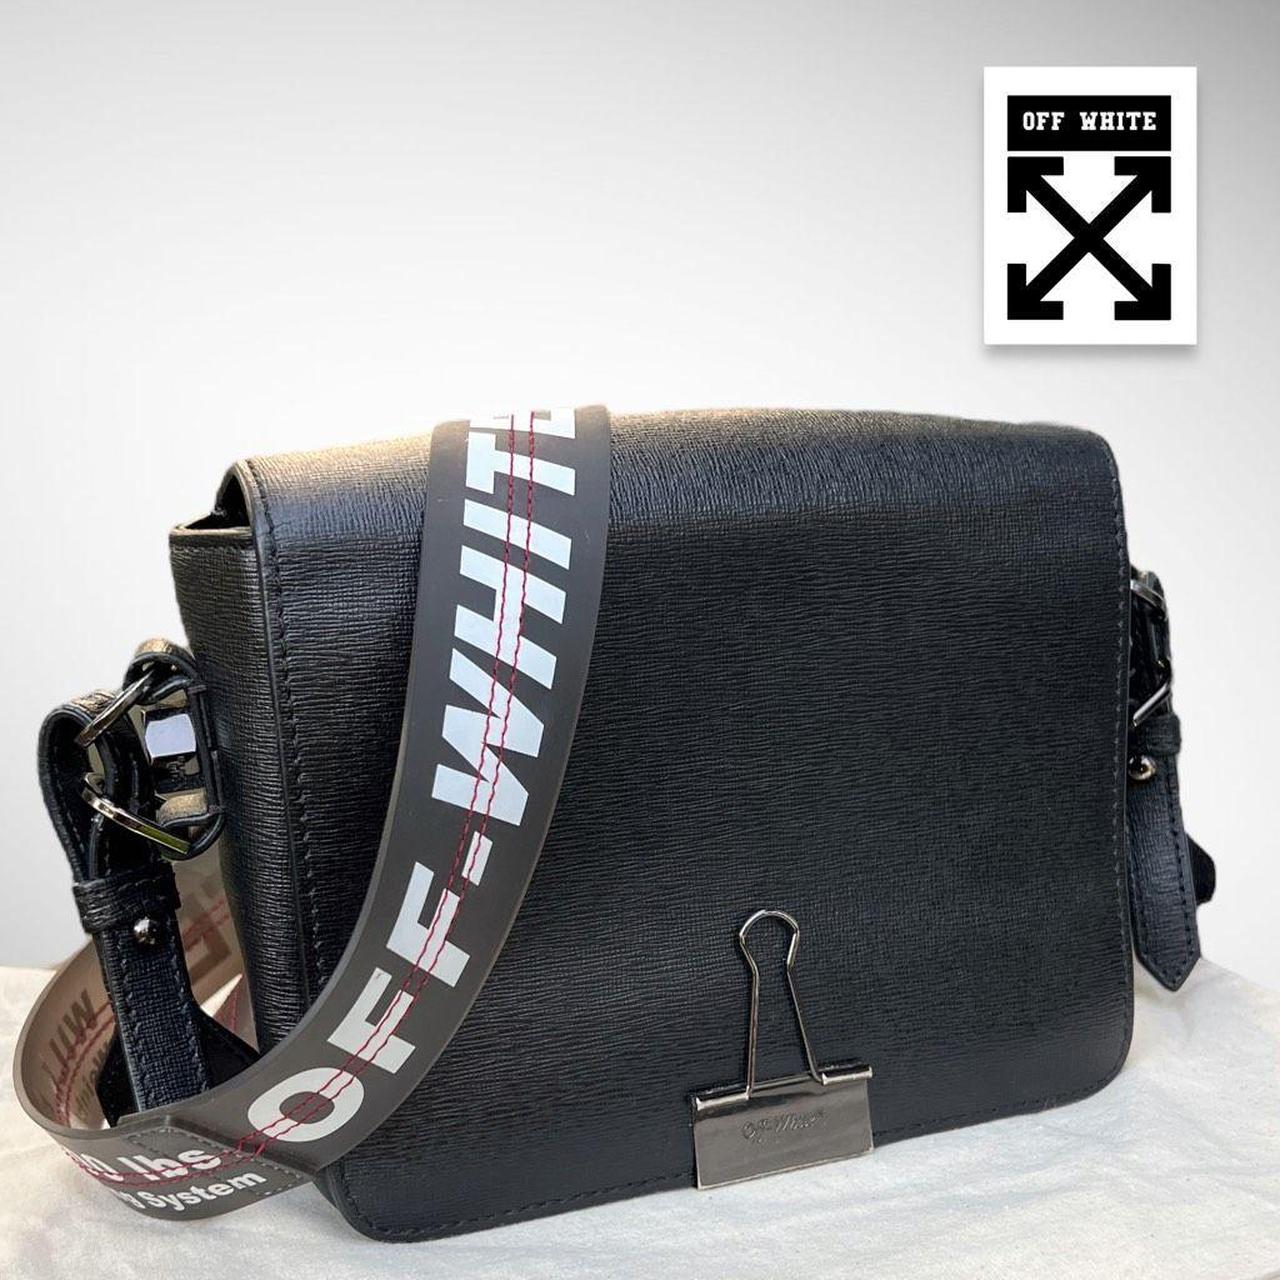 Off-White Black Leather Binder Shoulder Bag